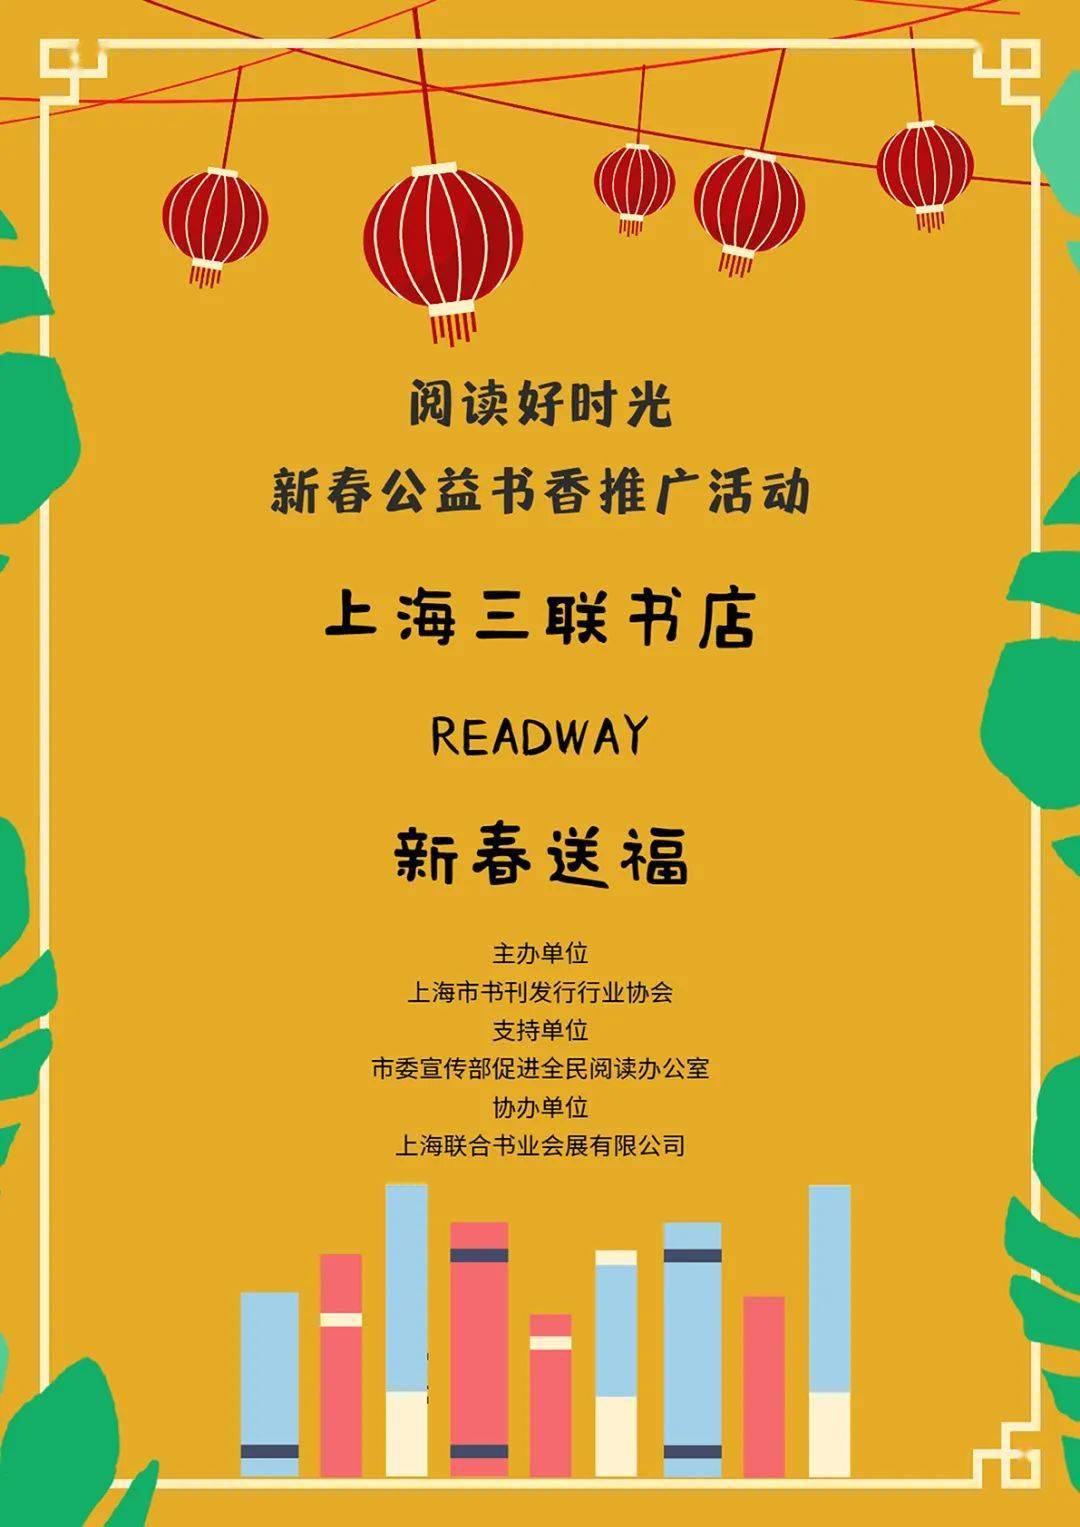 以下为参展书店海报呈现 上海三联书店readway新天地店 责任编辑